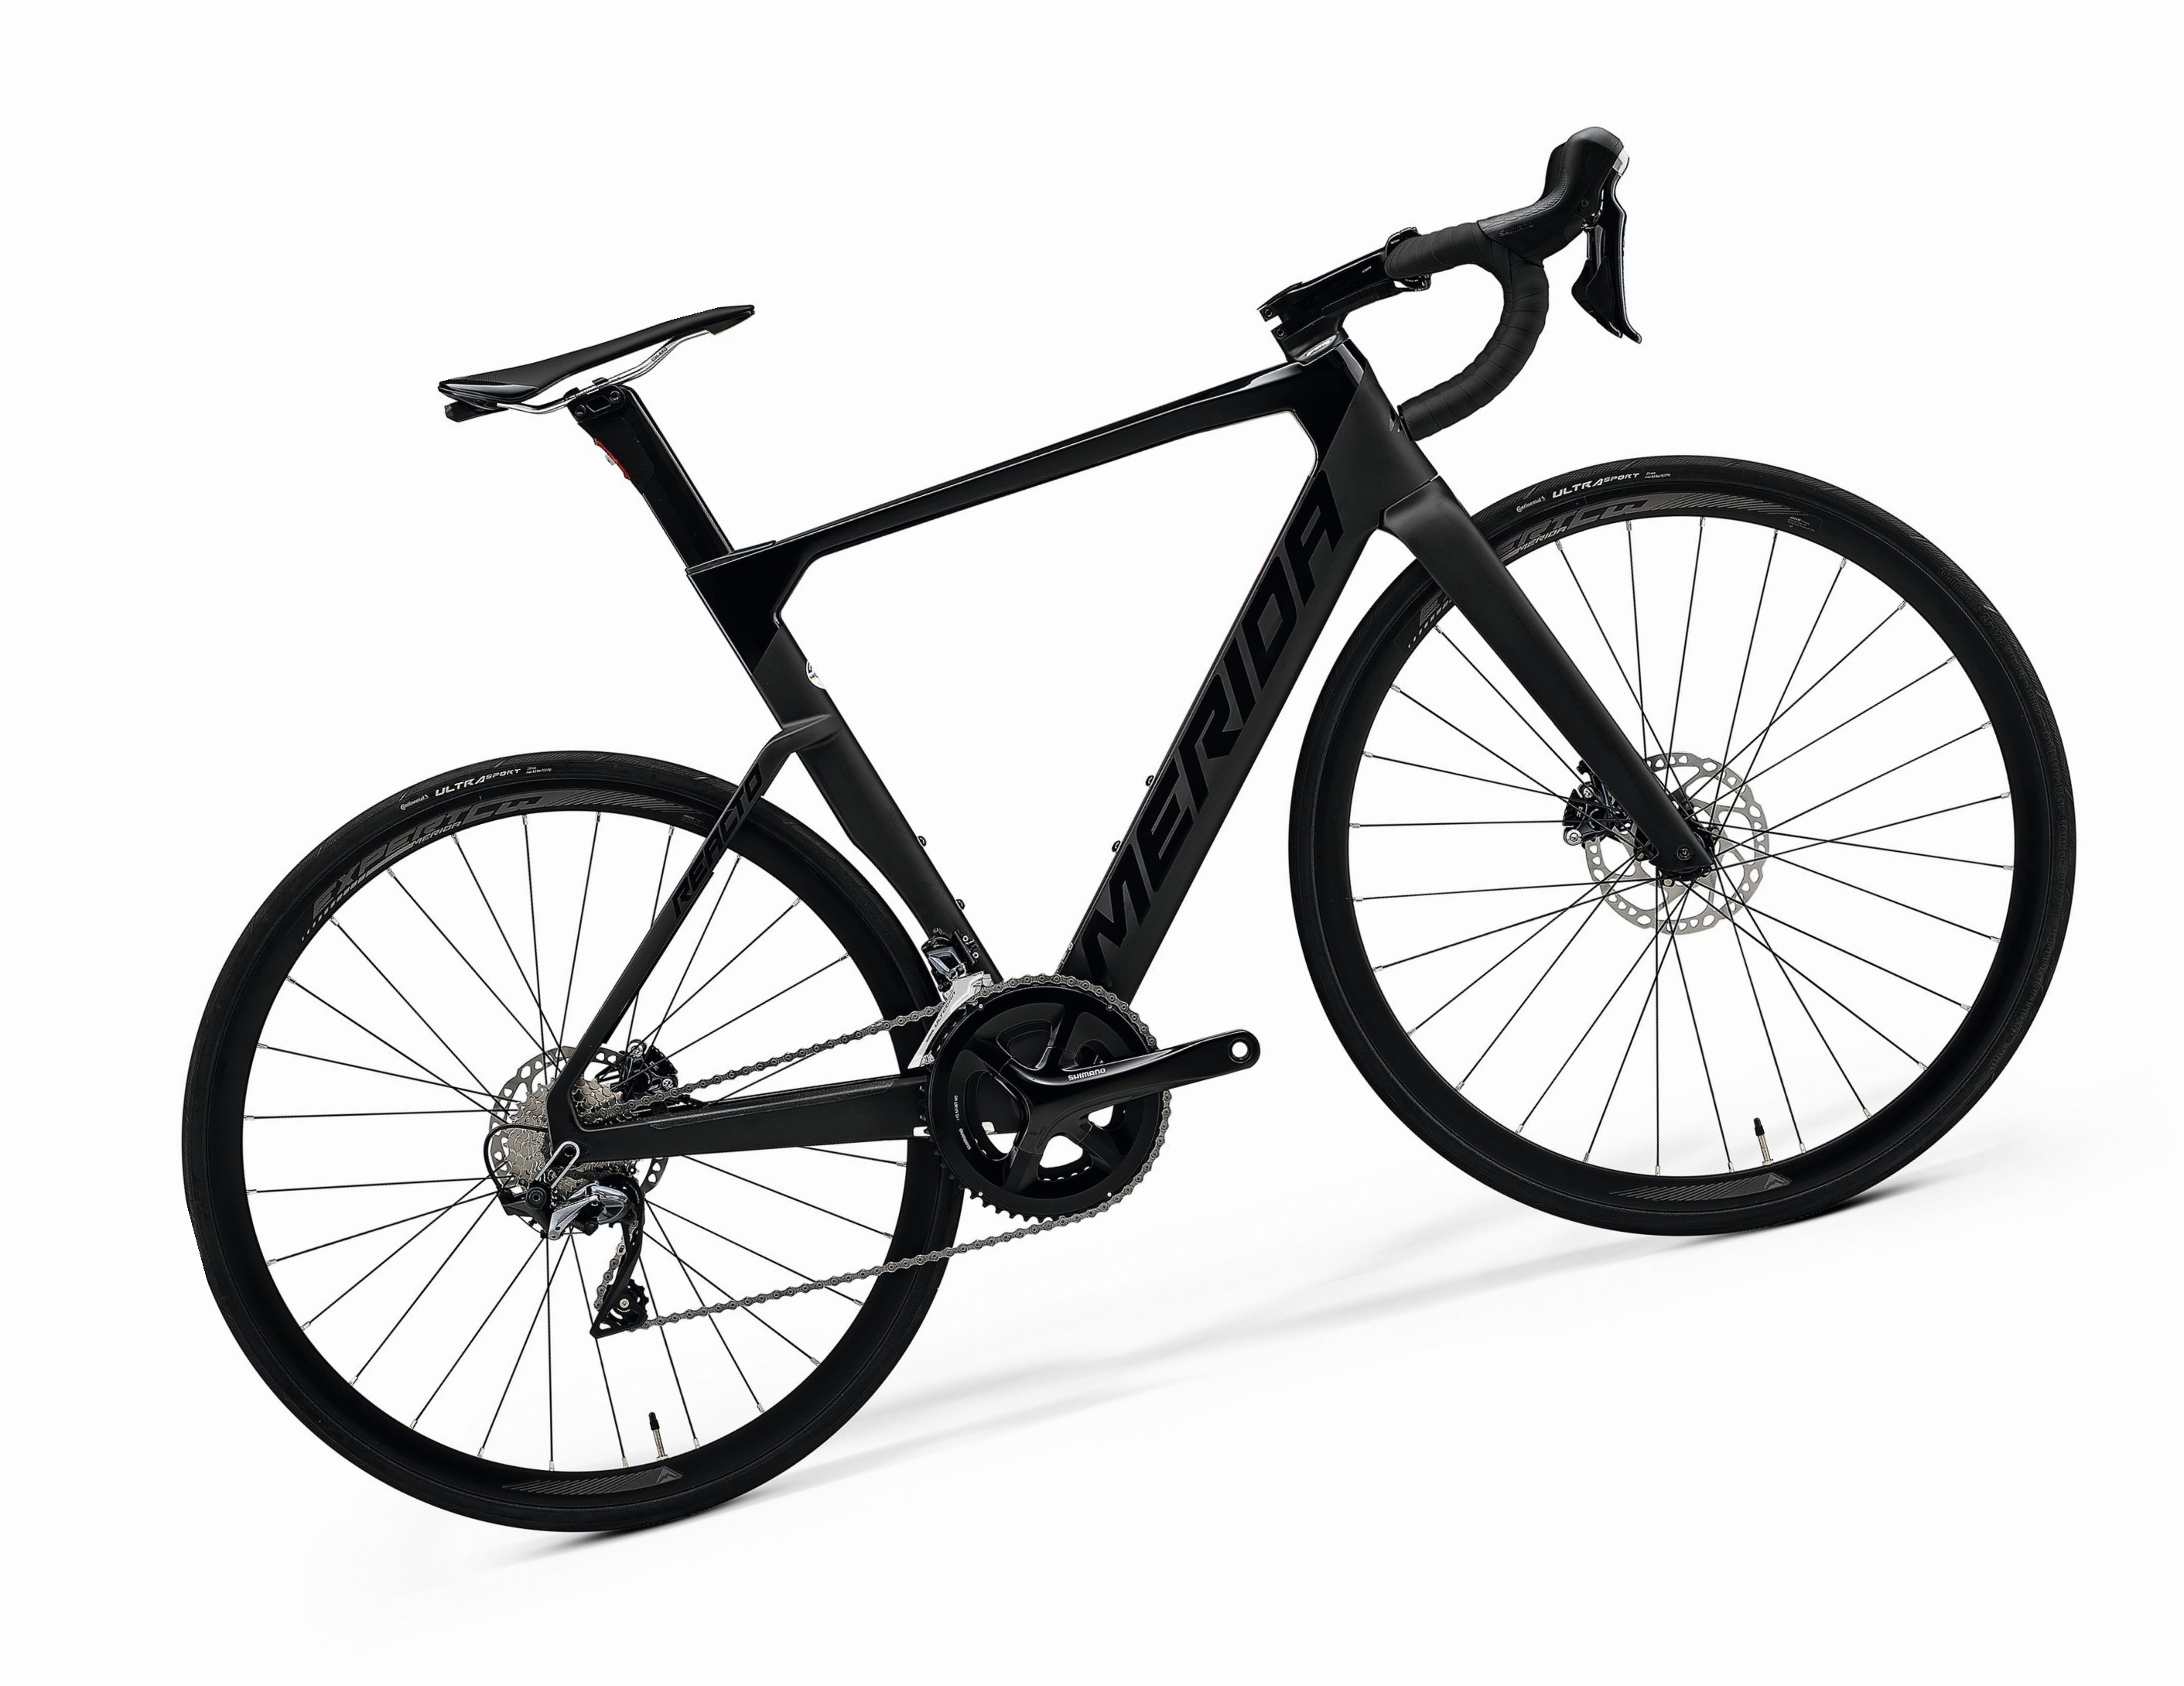 Велосипед Merida Reacto 5000 (2021) купить по низкой цене – 153075р.